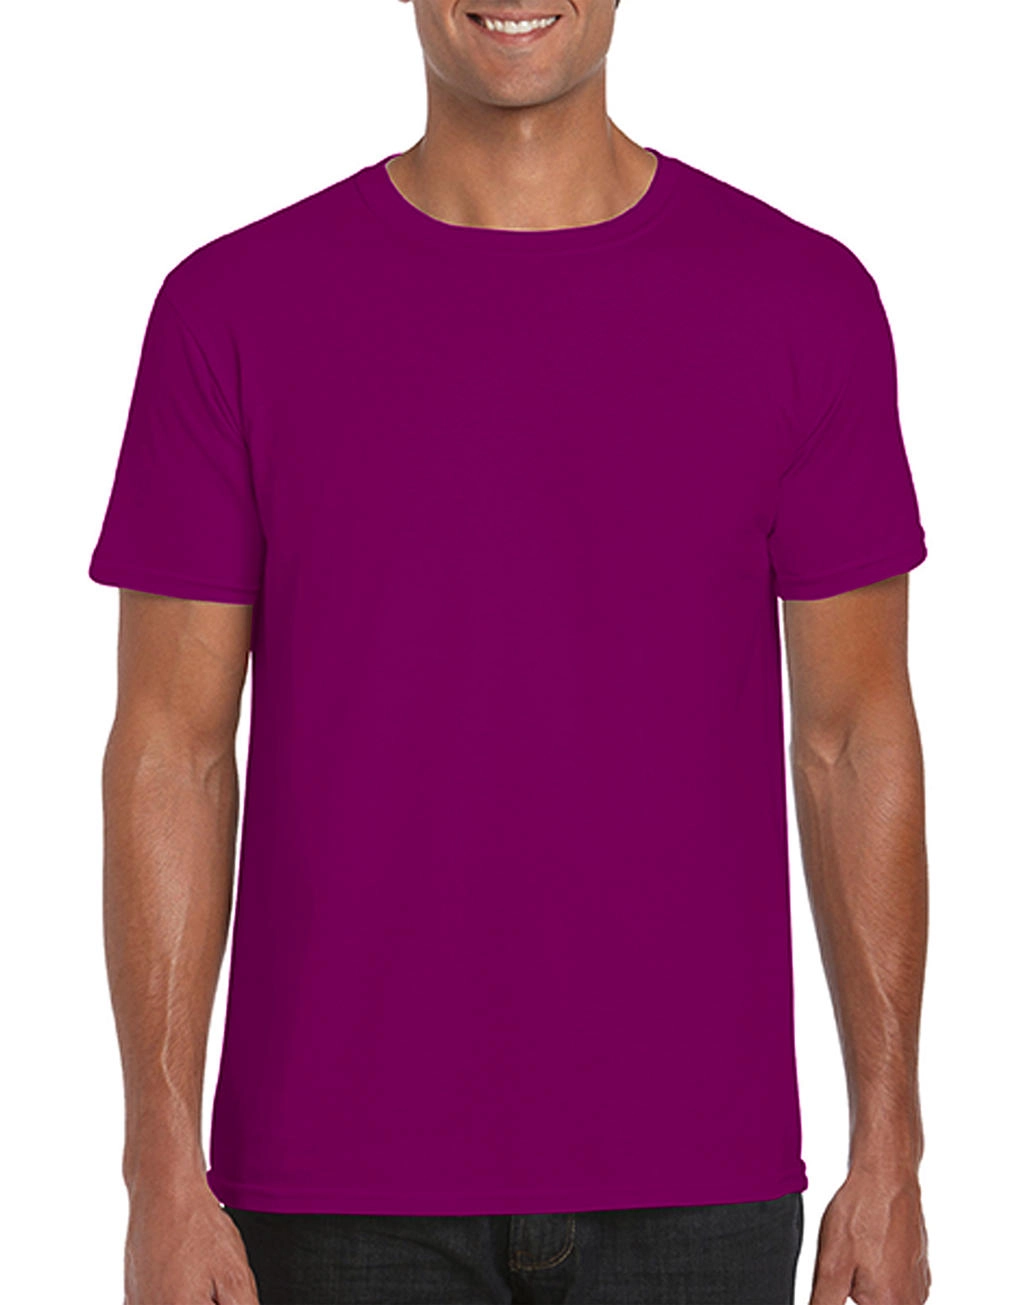 Softstyle® Ring Spun T-Shirt zum Besticken und Bedrucken in der Farbe Berry mit Ihren Logo, Schriftzug oder Motiv.